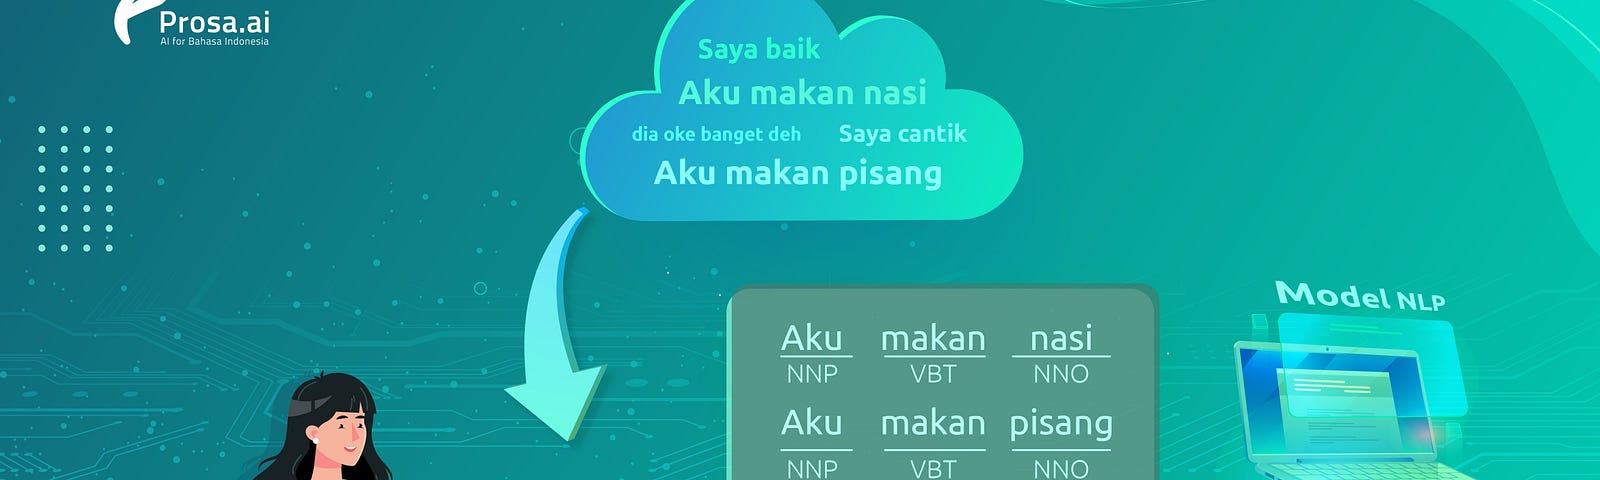 Proses anotasi teks bahasa Indonesia dalam sistem NLP